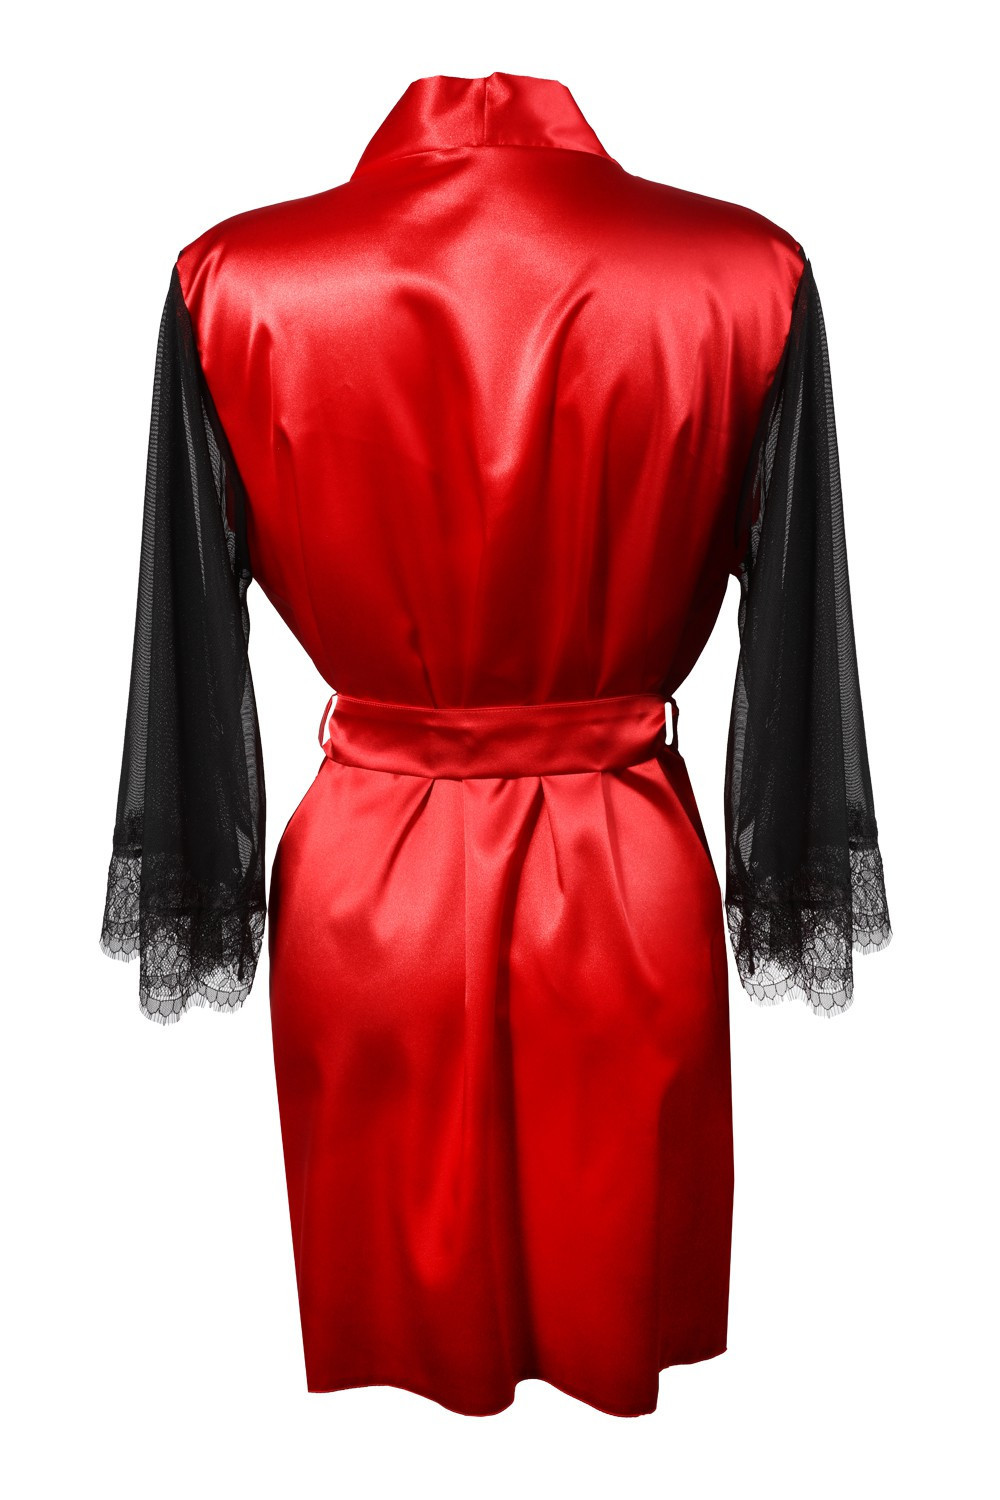 DKaren Housecoat Bonnie Red XL červená